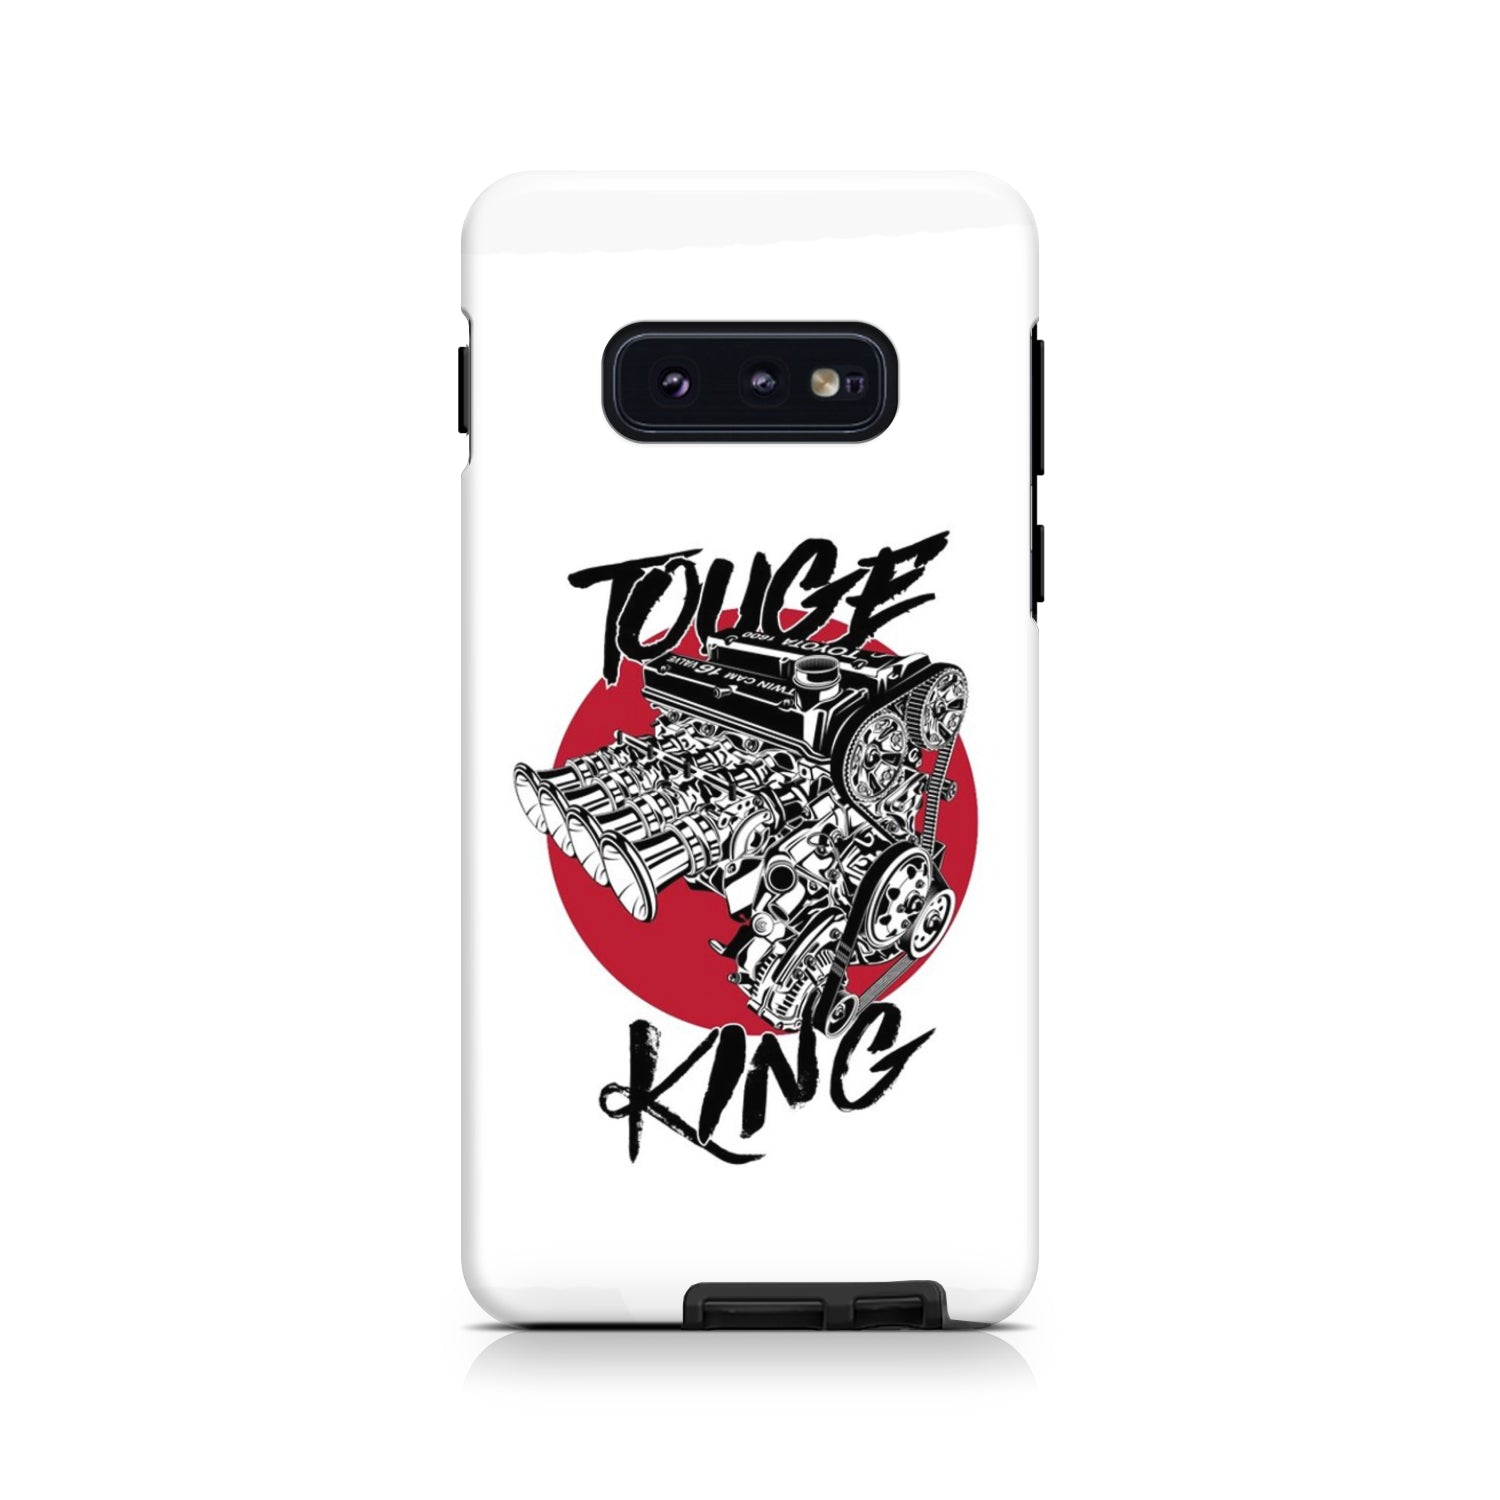 Touge King Phone Case